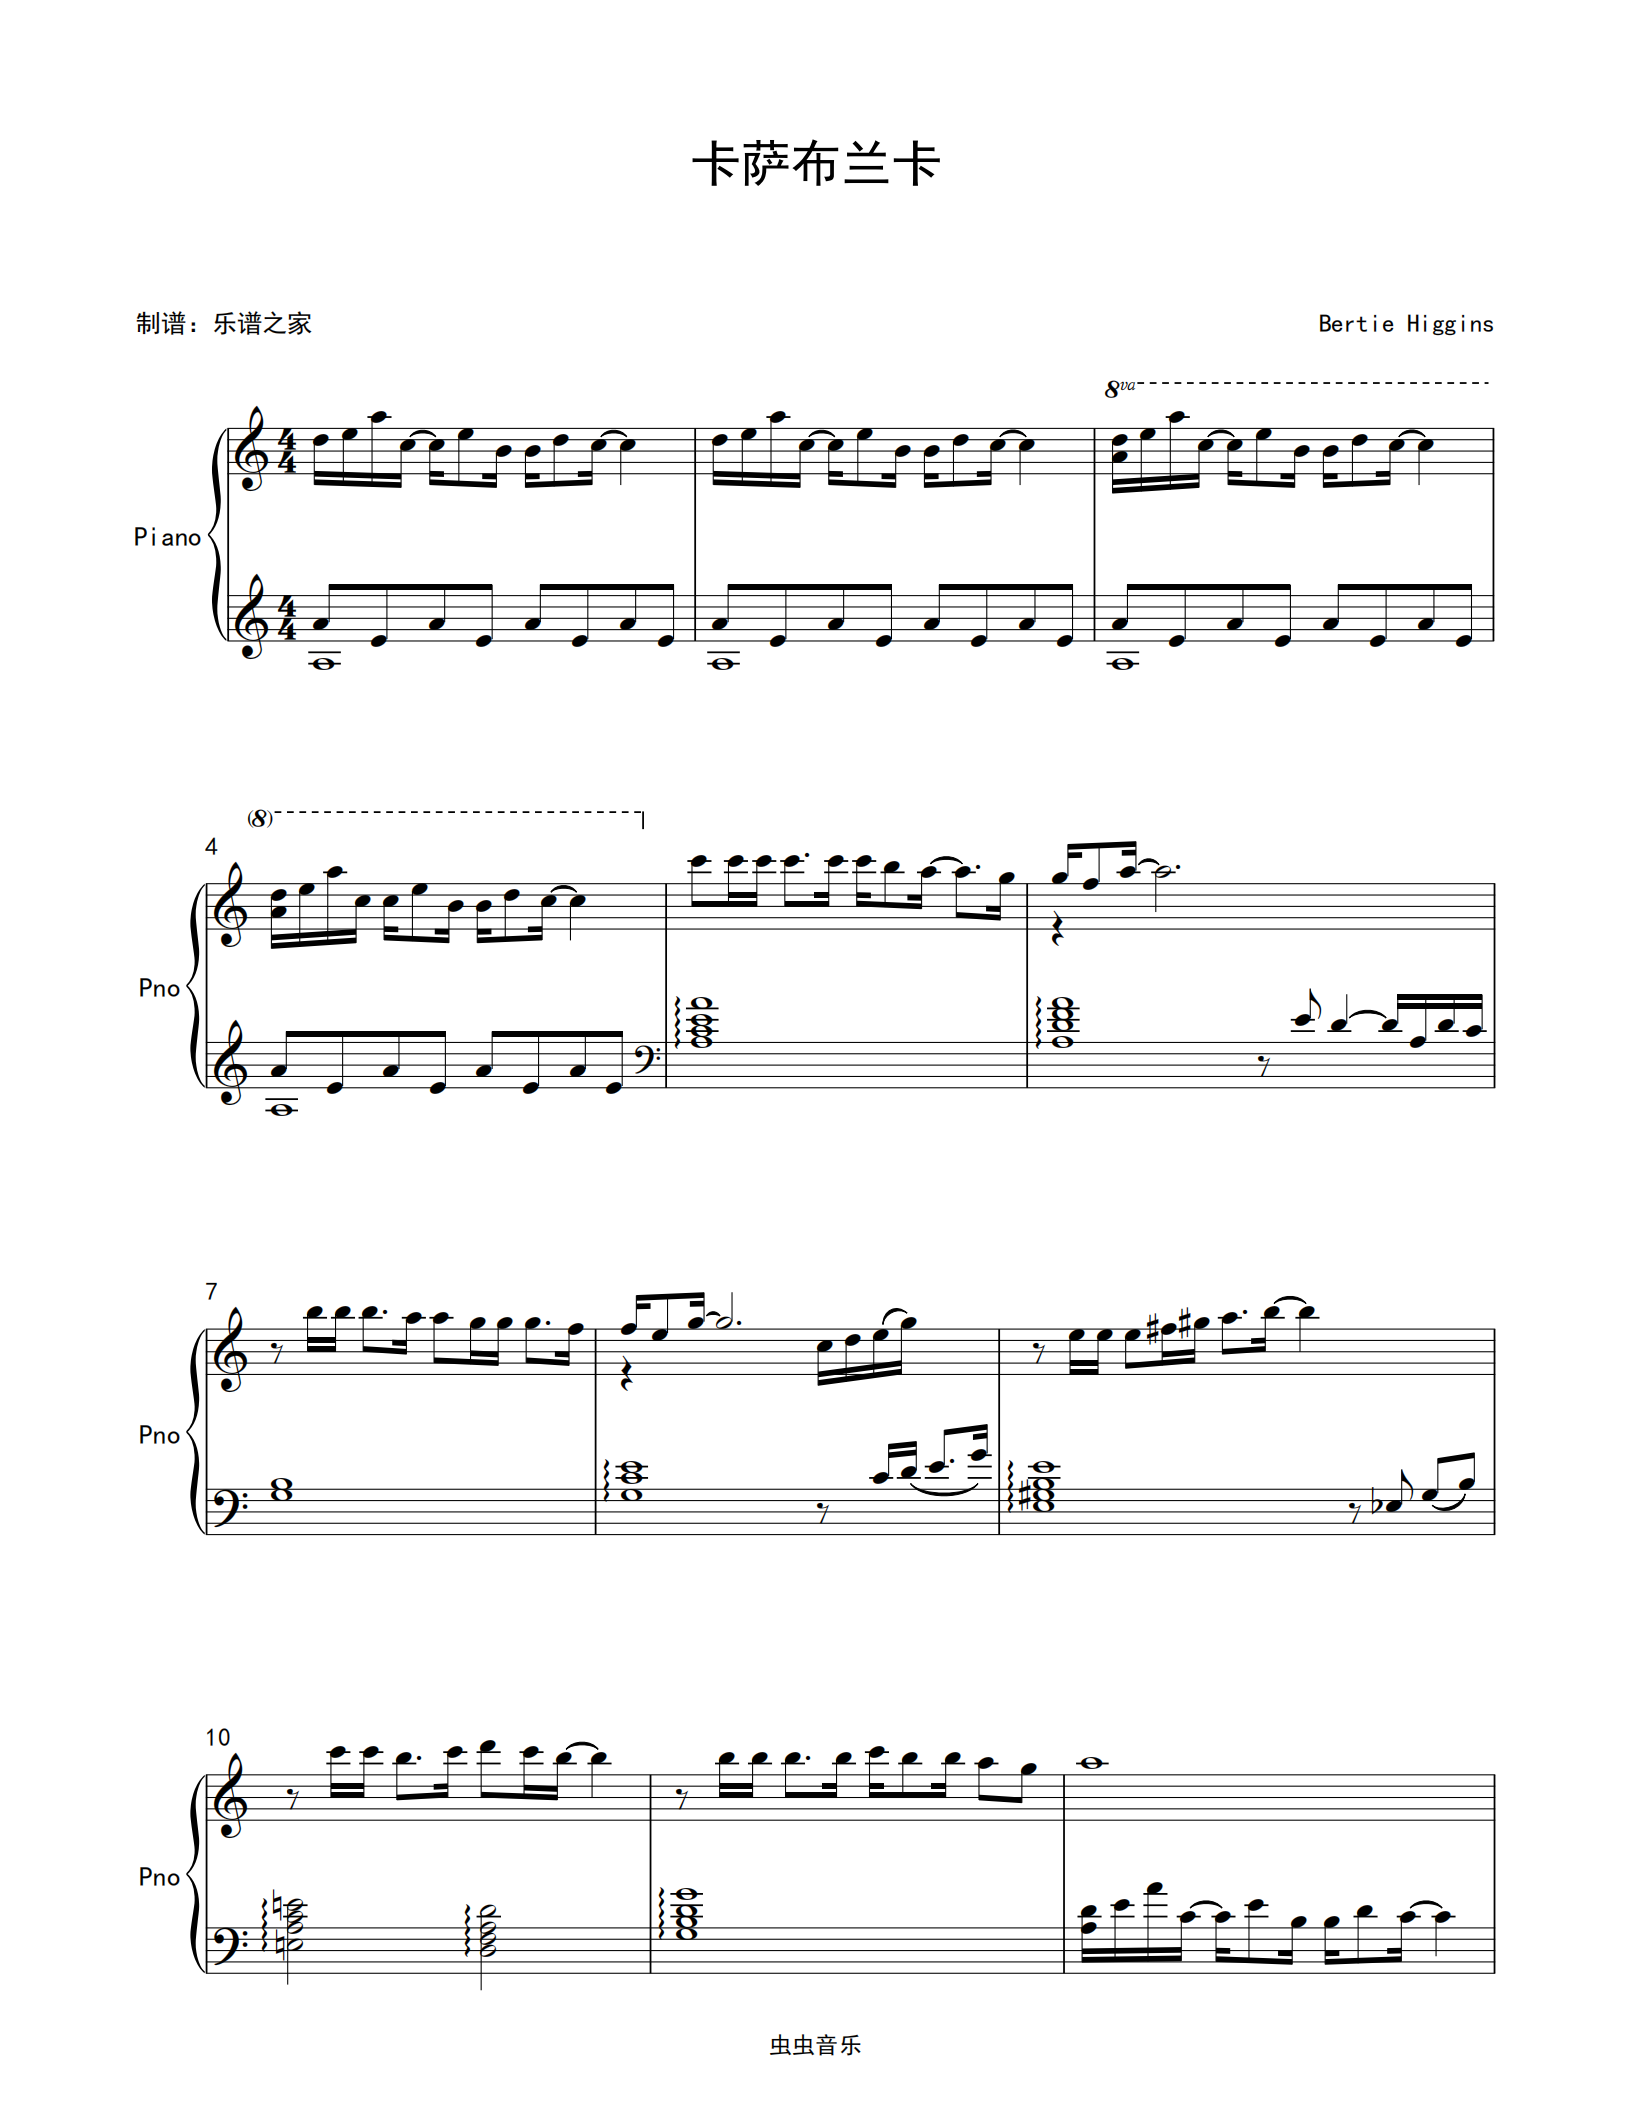 卡萨布兰卡 经典英文歌曲 独奏钢琴谱 高清乐谱 送示范音频